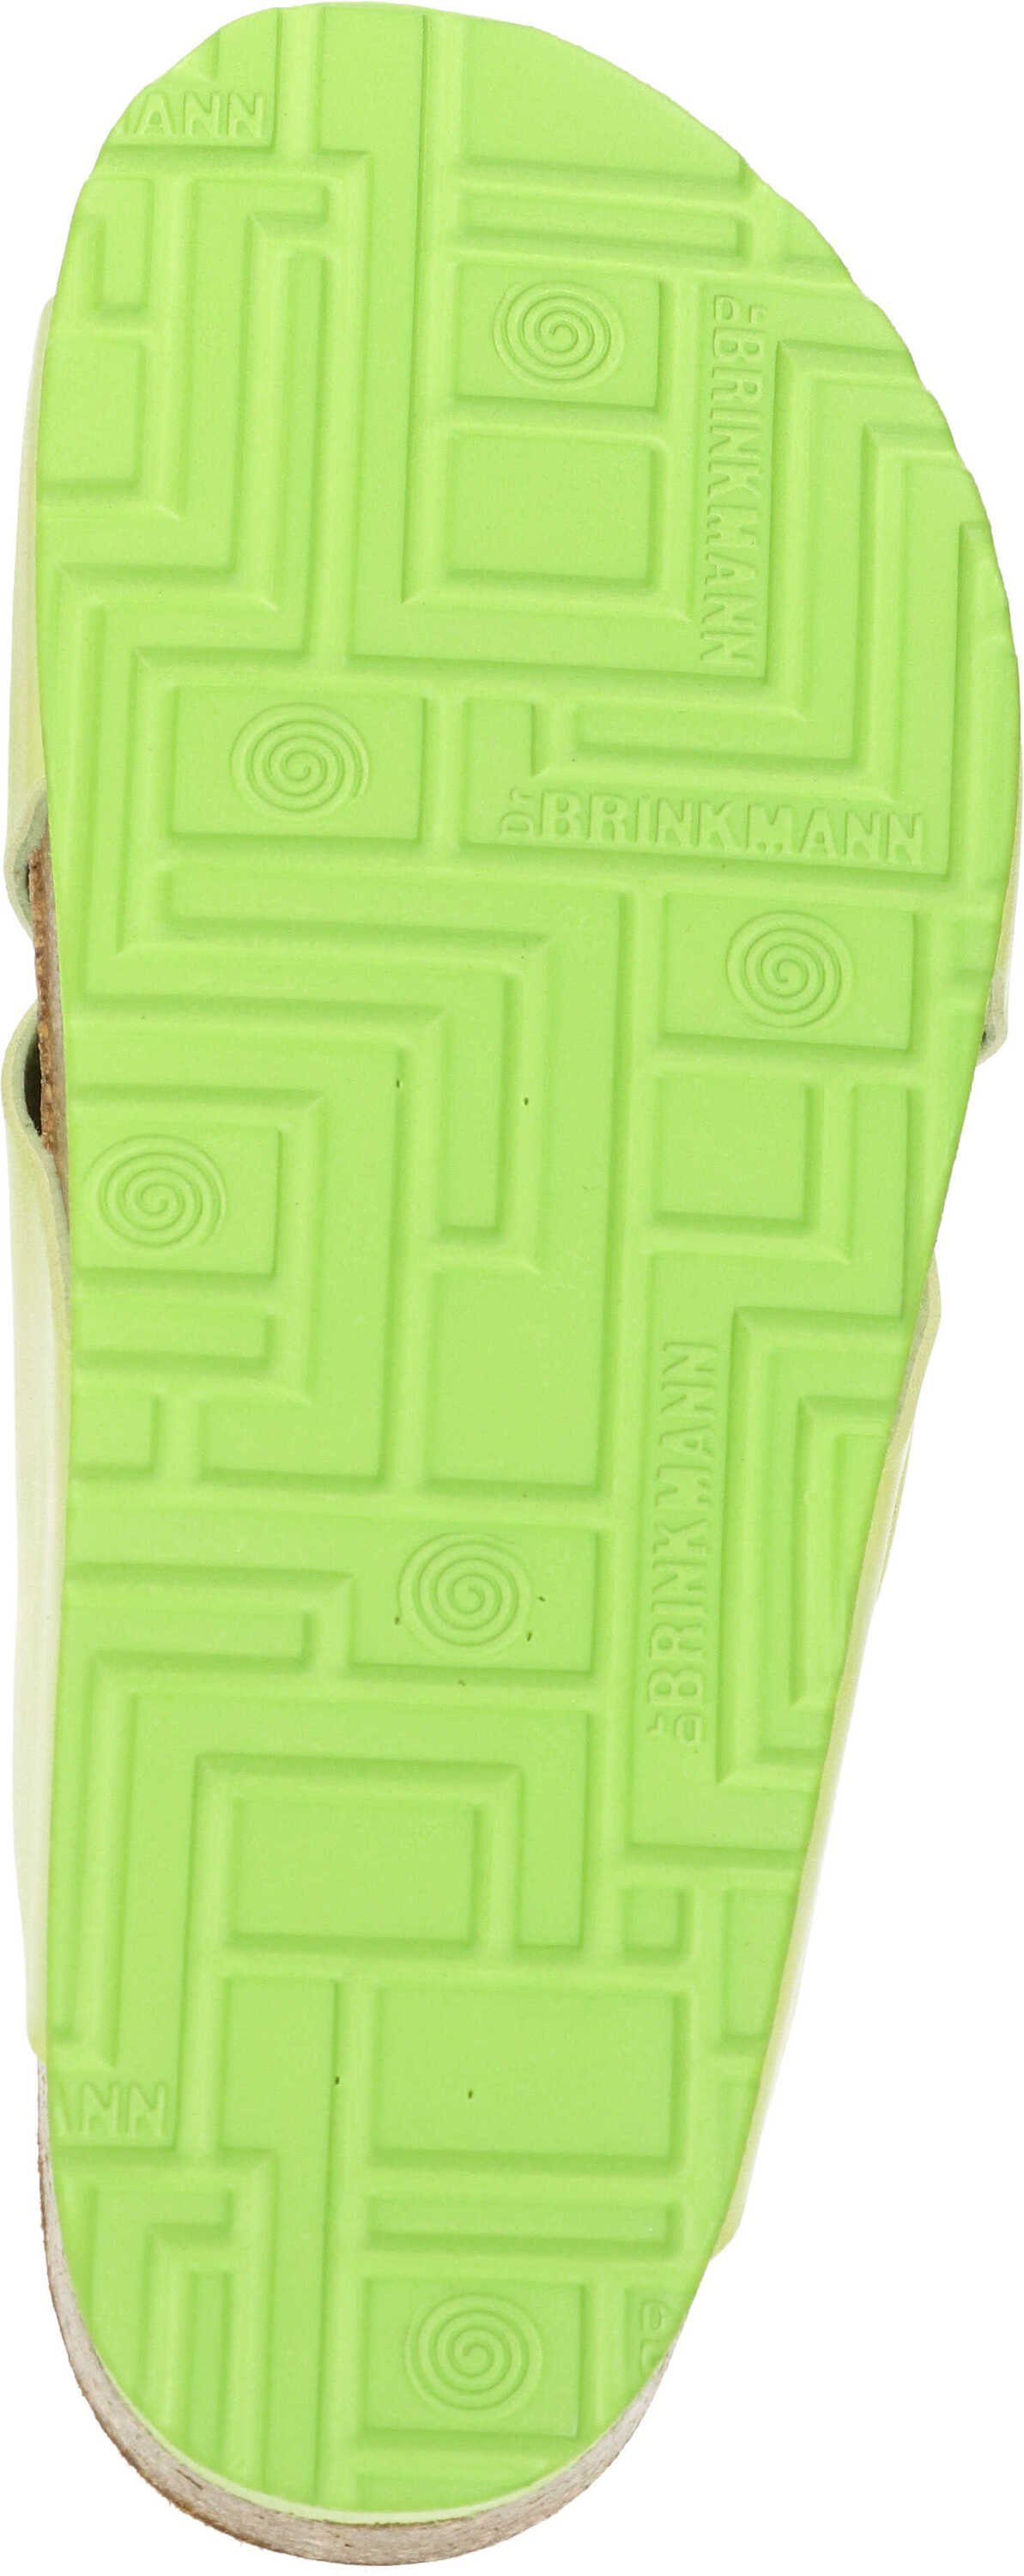 Pantolette hellgrün aus strapazierfähigen Dr. Brinkmann Pantoletten Gewebefasern